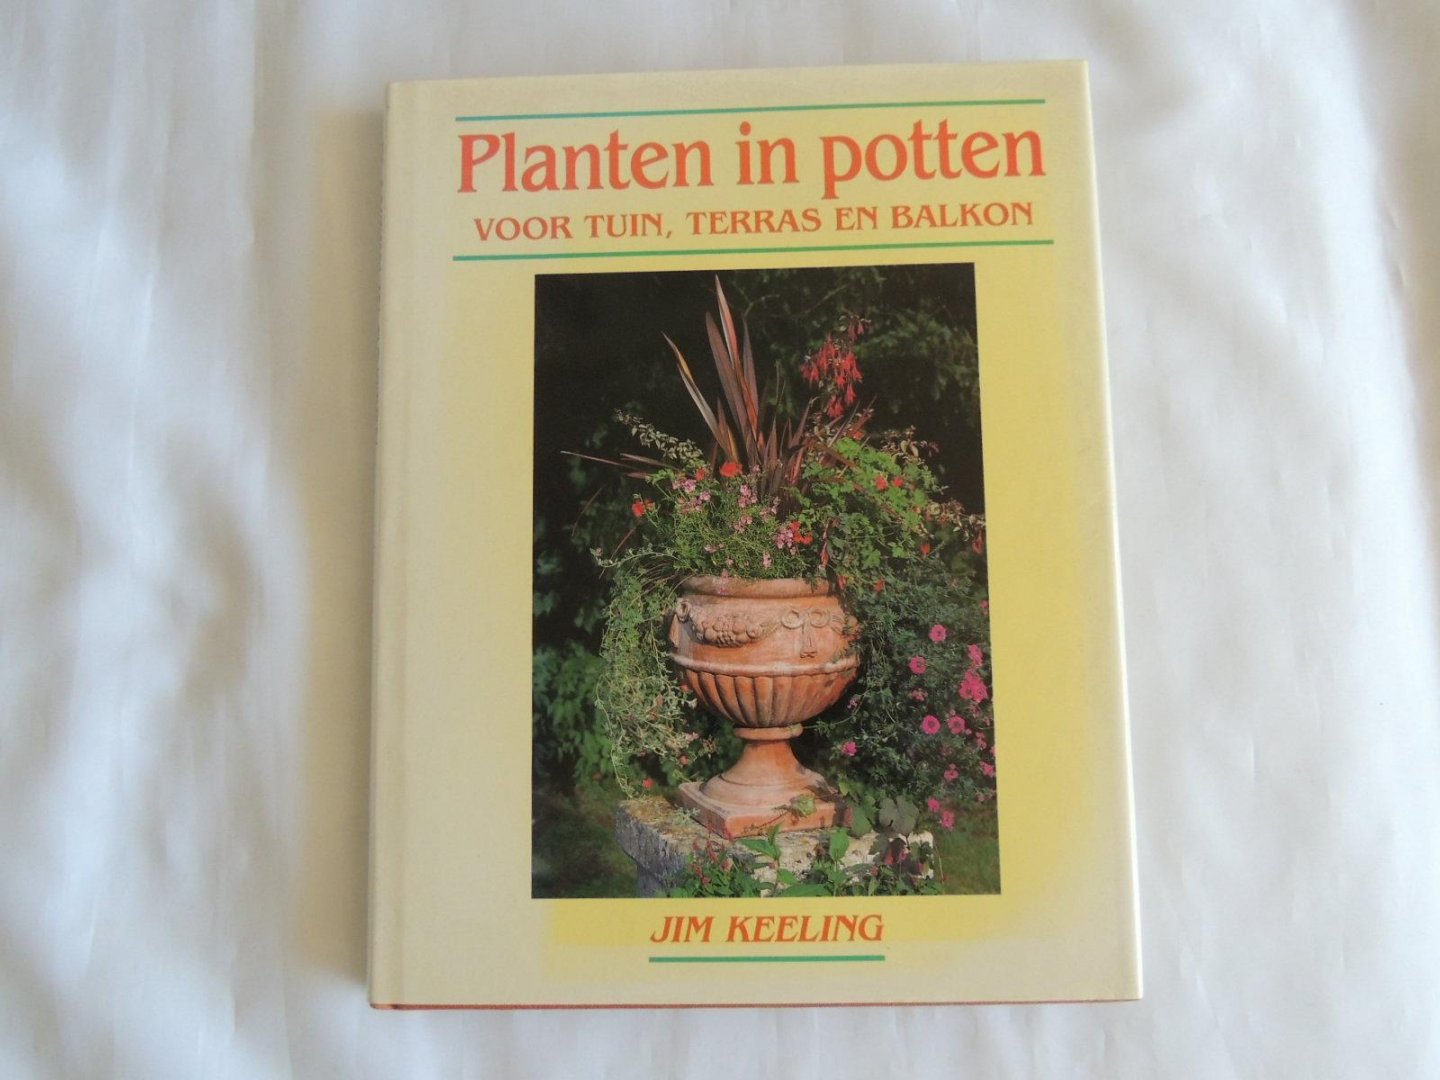 Keeling, Jim - Planten in potten voor tuin, terras en balkon